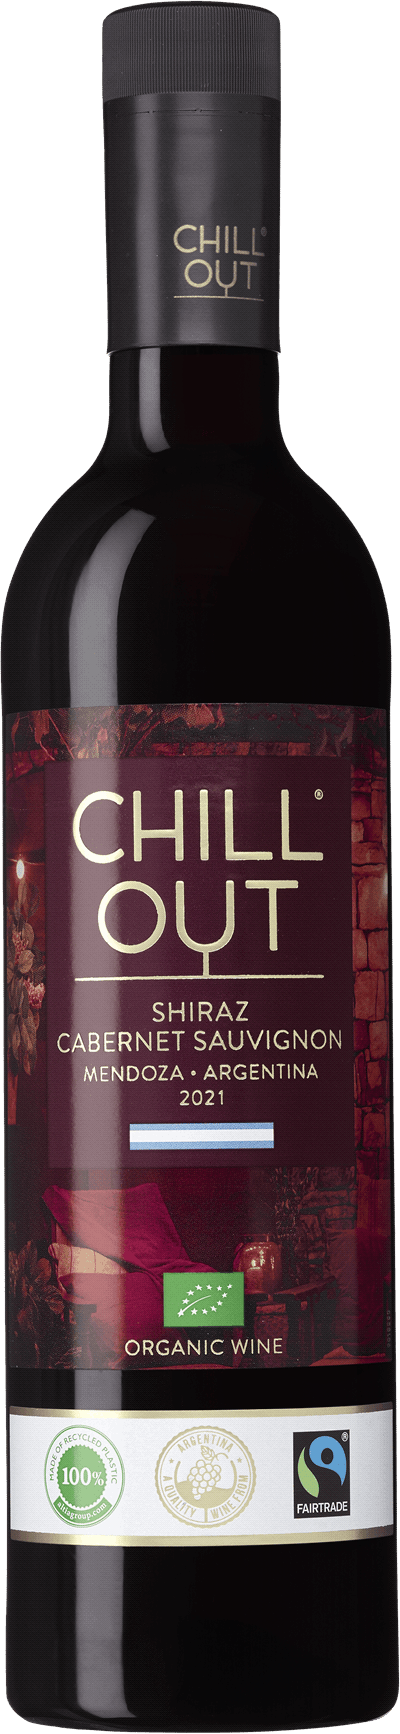 CHILL OUT Shiraz Cabernet Sauvignon Organic Fairtrade, 2020